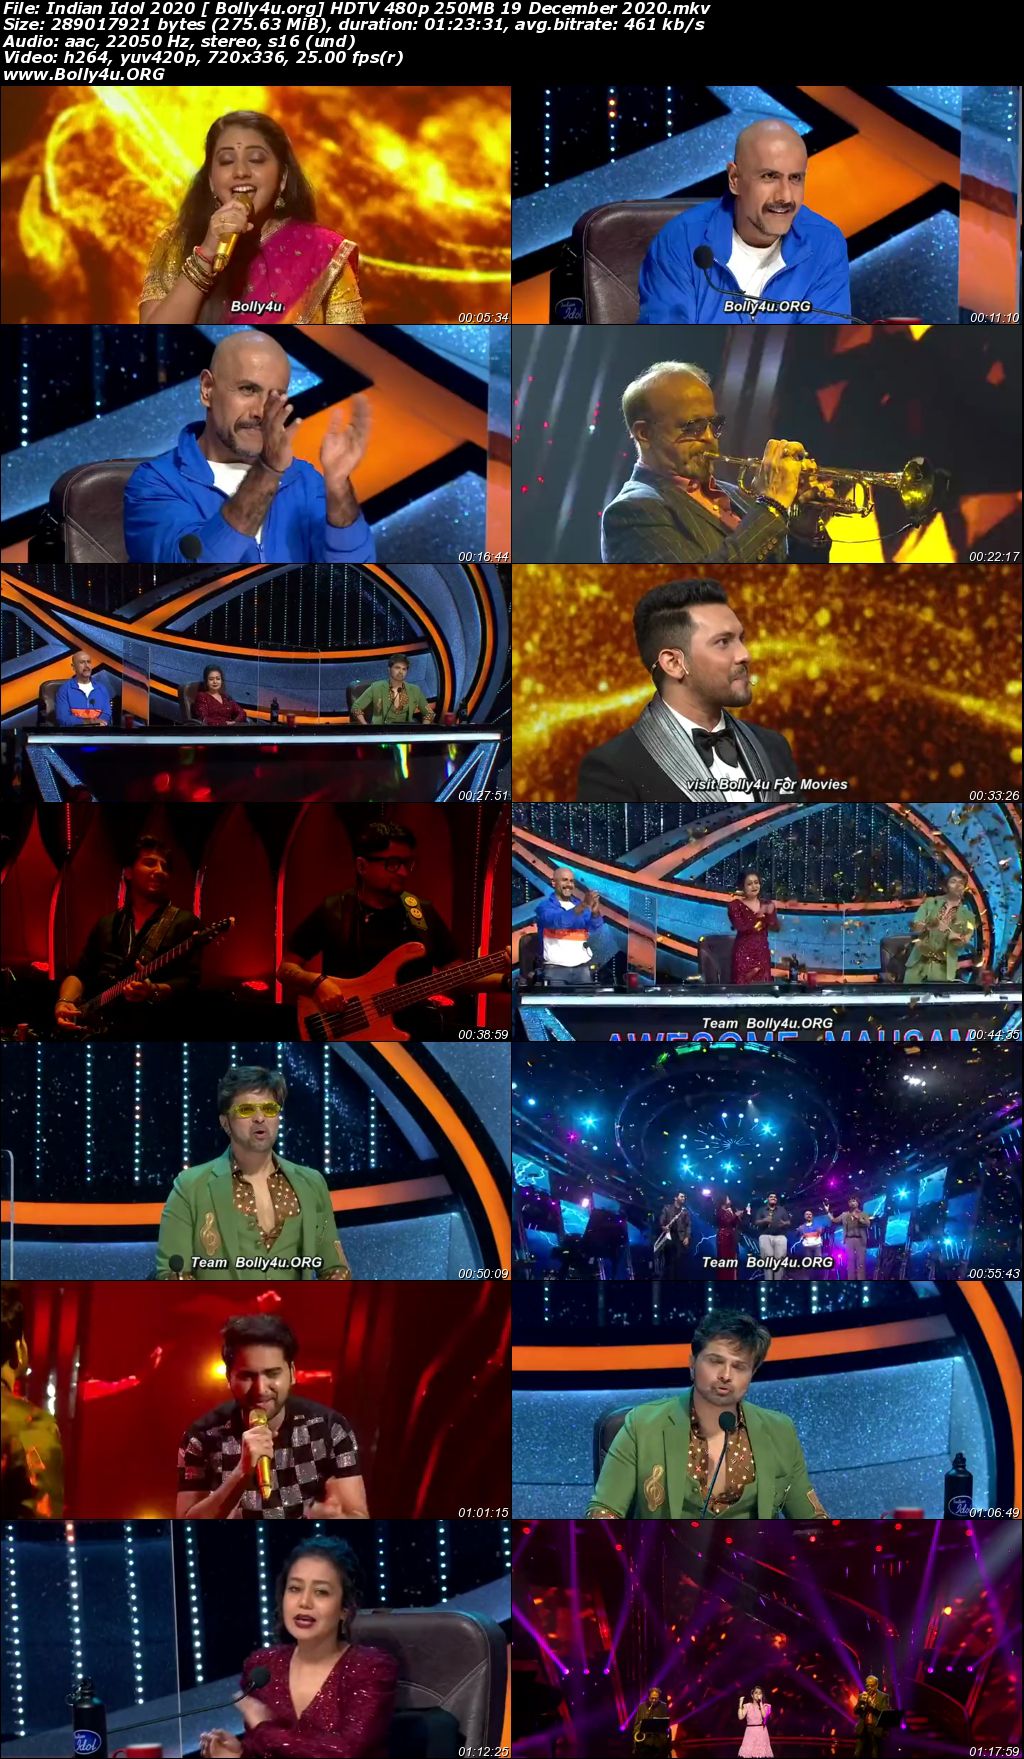 Indian Idol 2020 HDTV 480p 250MB 19 December 2020 Download